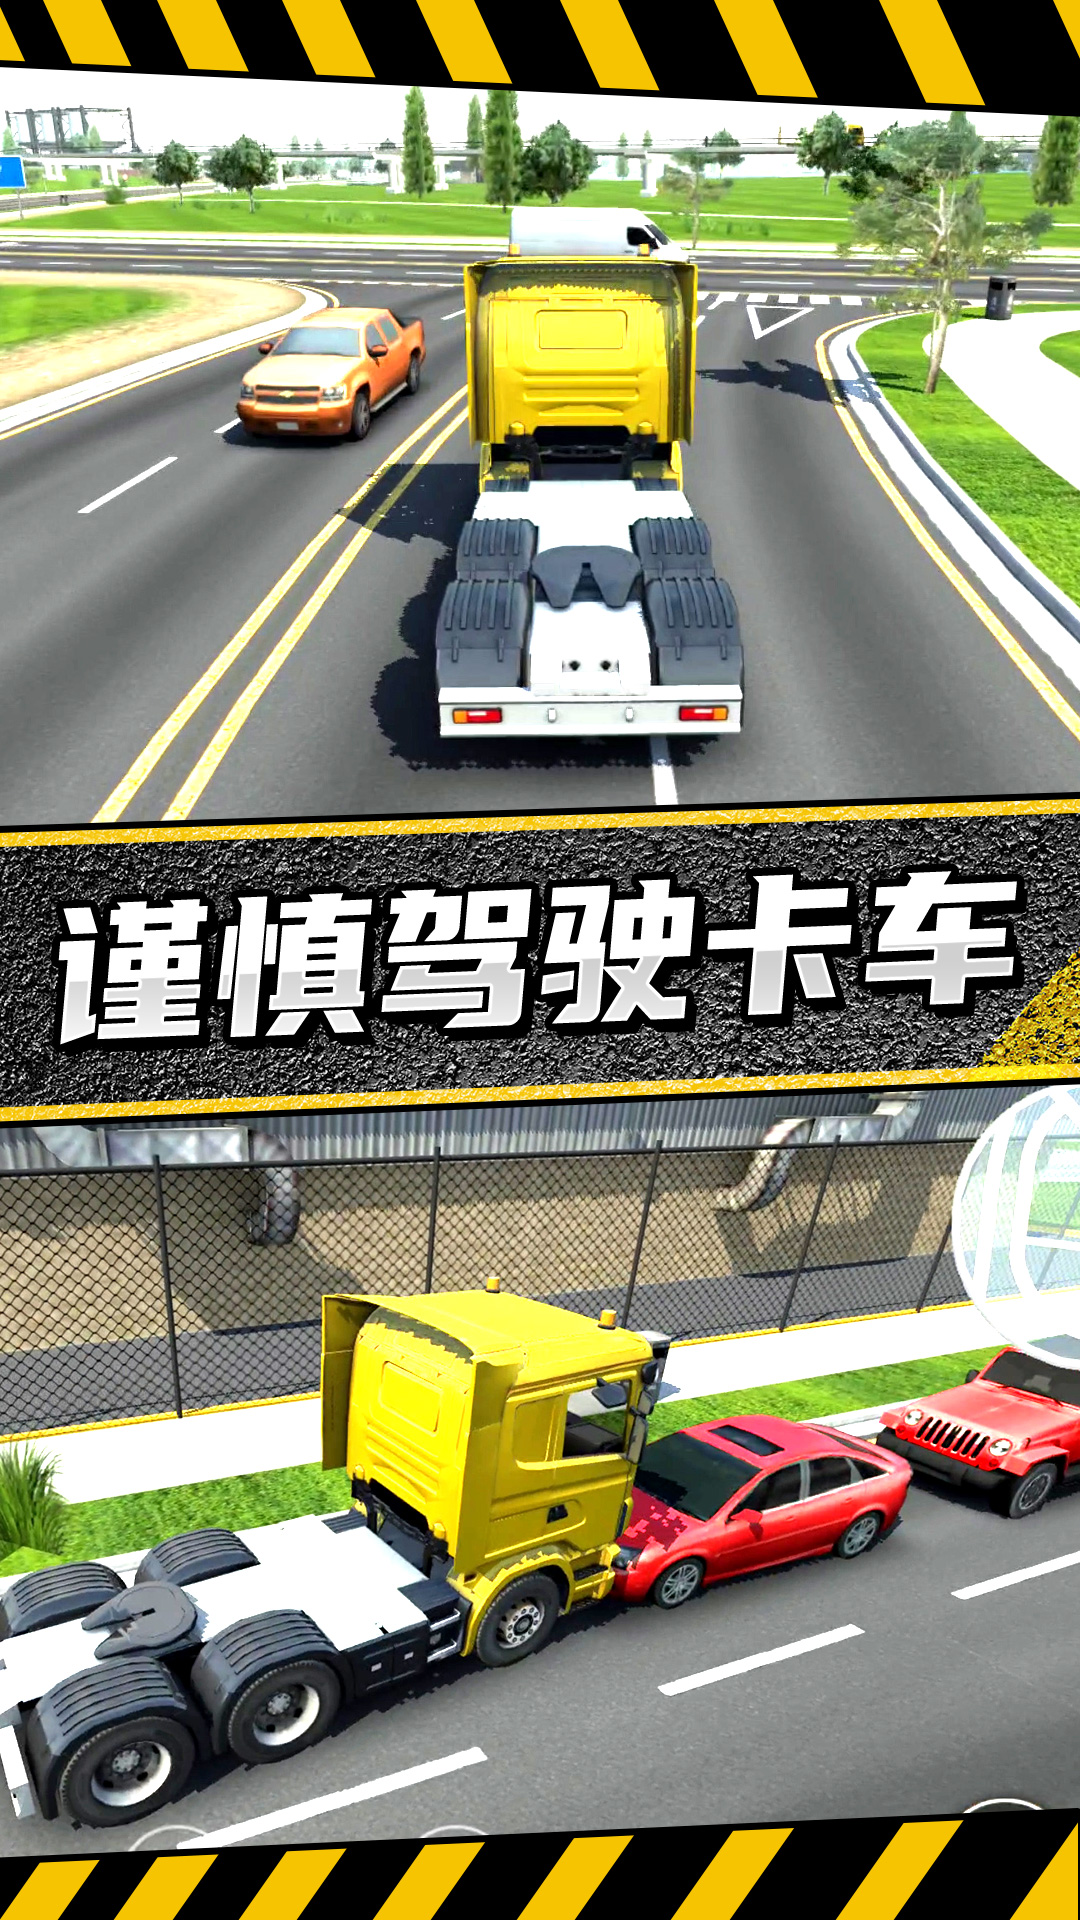 疯狂卡车公路挑战赛游戏截图